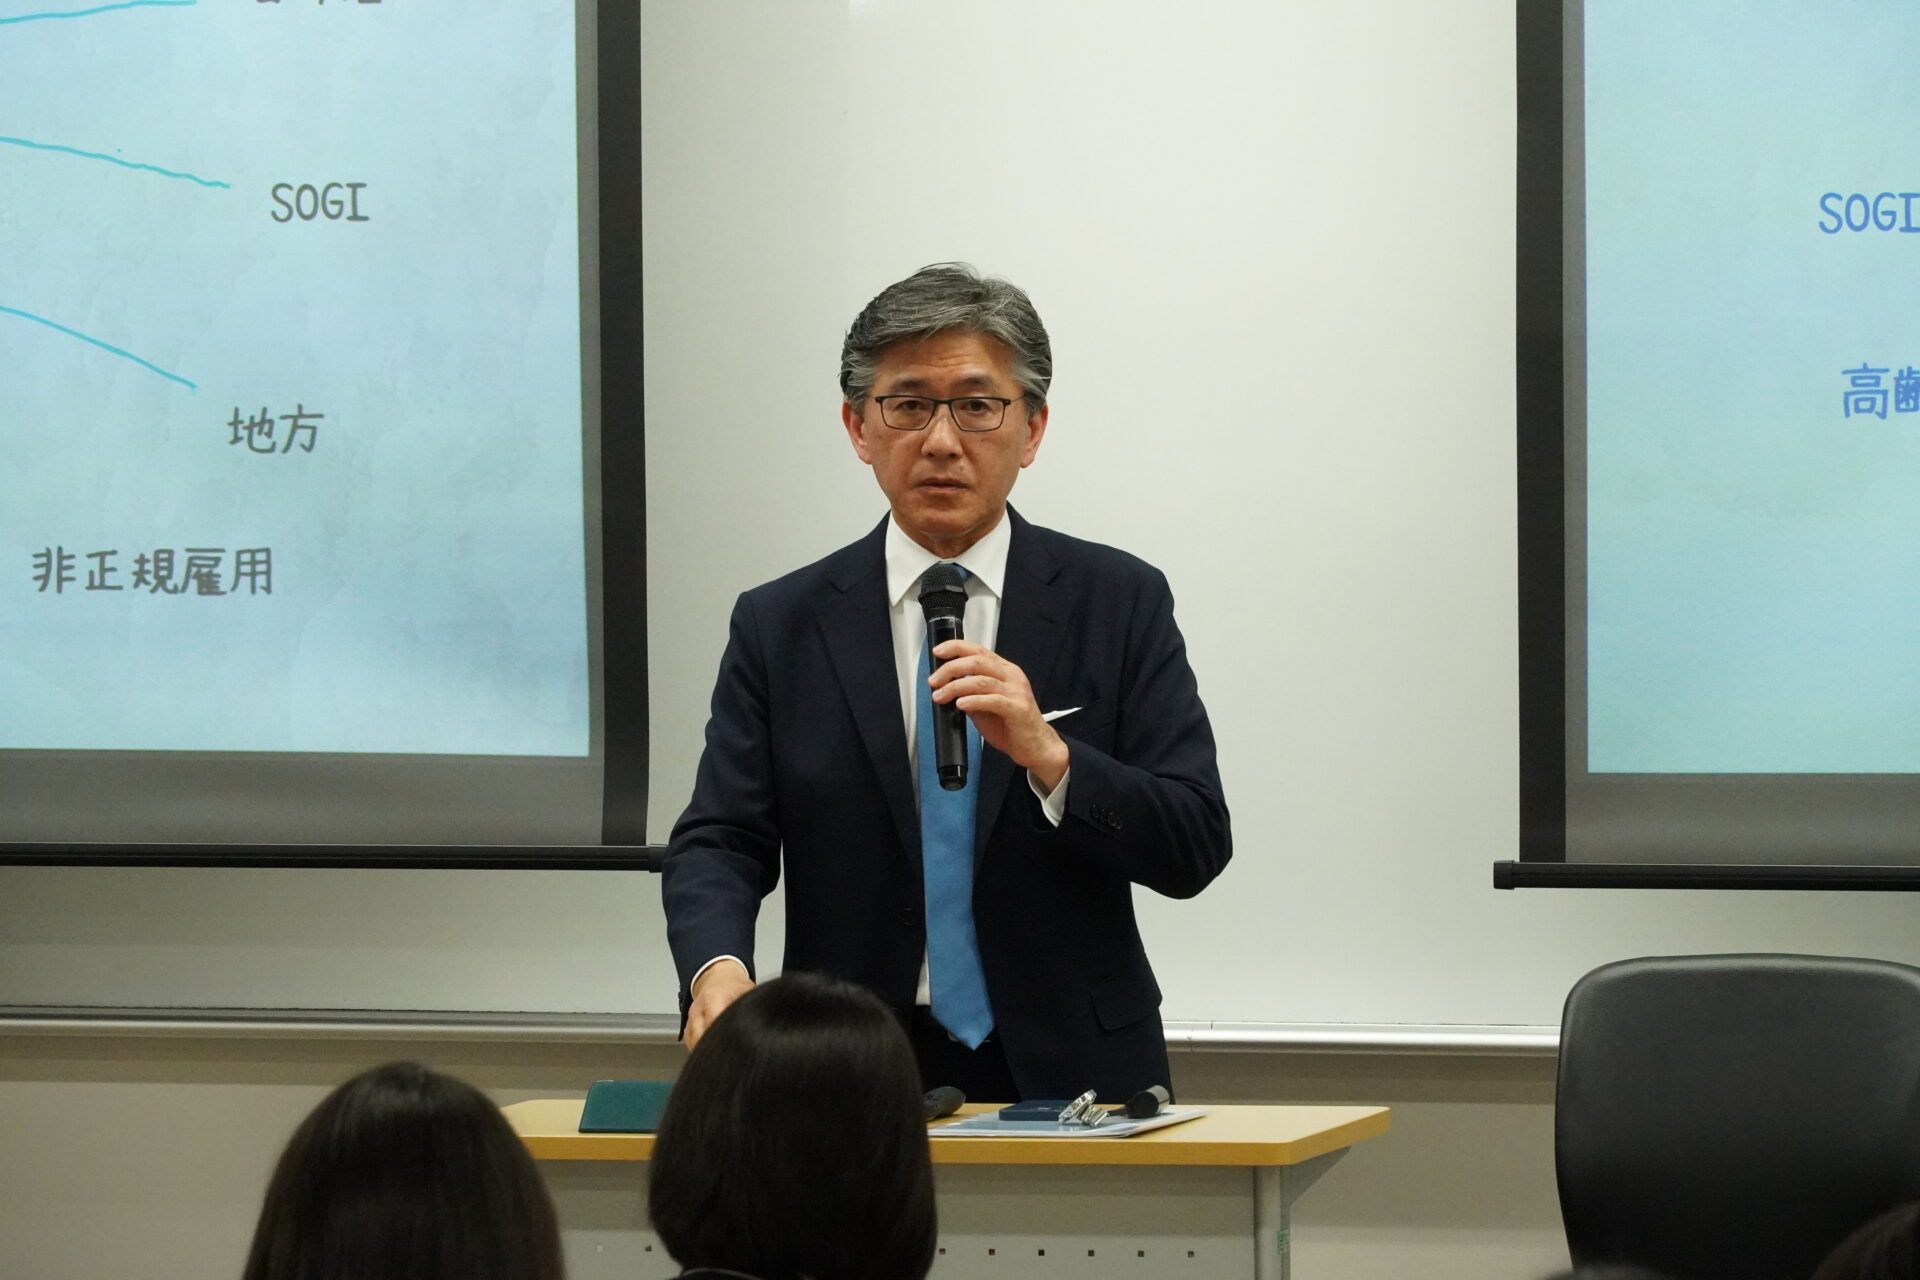 「実践キャリアプランニング」の授業で連合の前事務局長の相原康伸氏が「公益」についての講演を行いました。